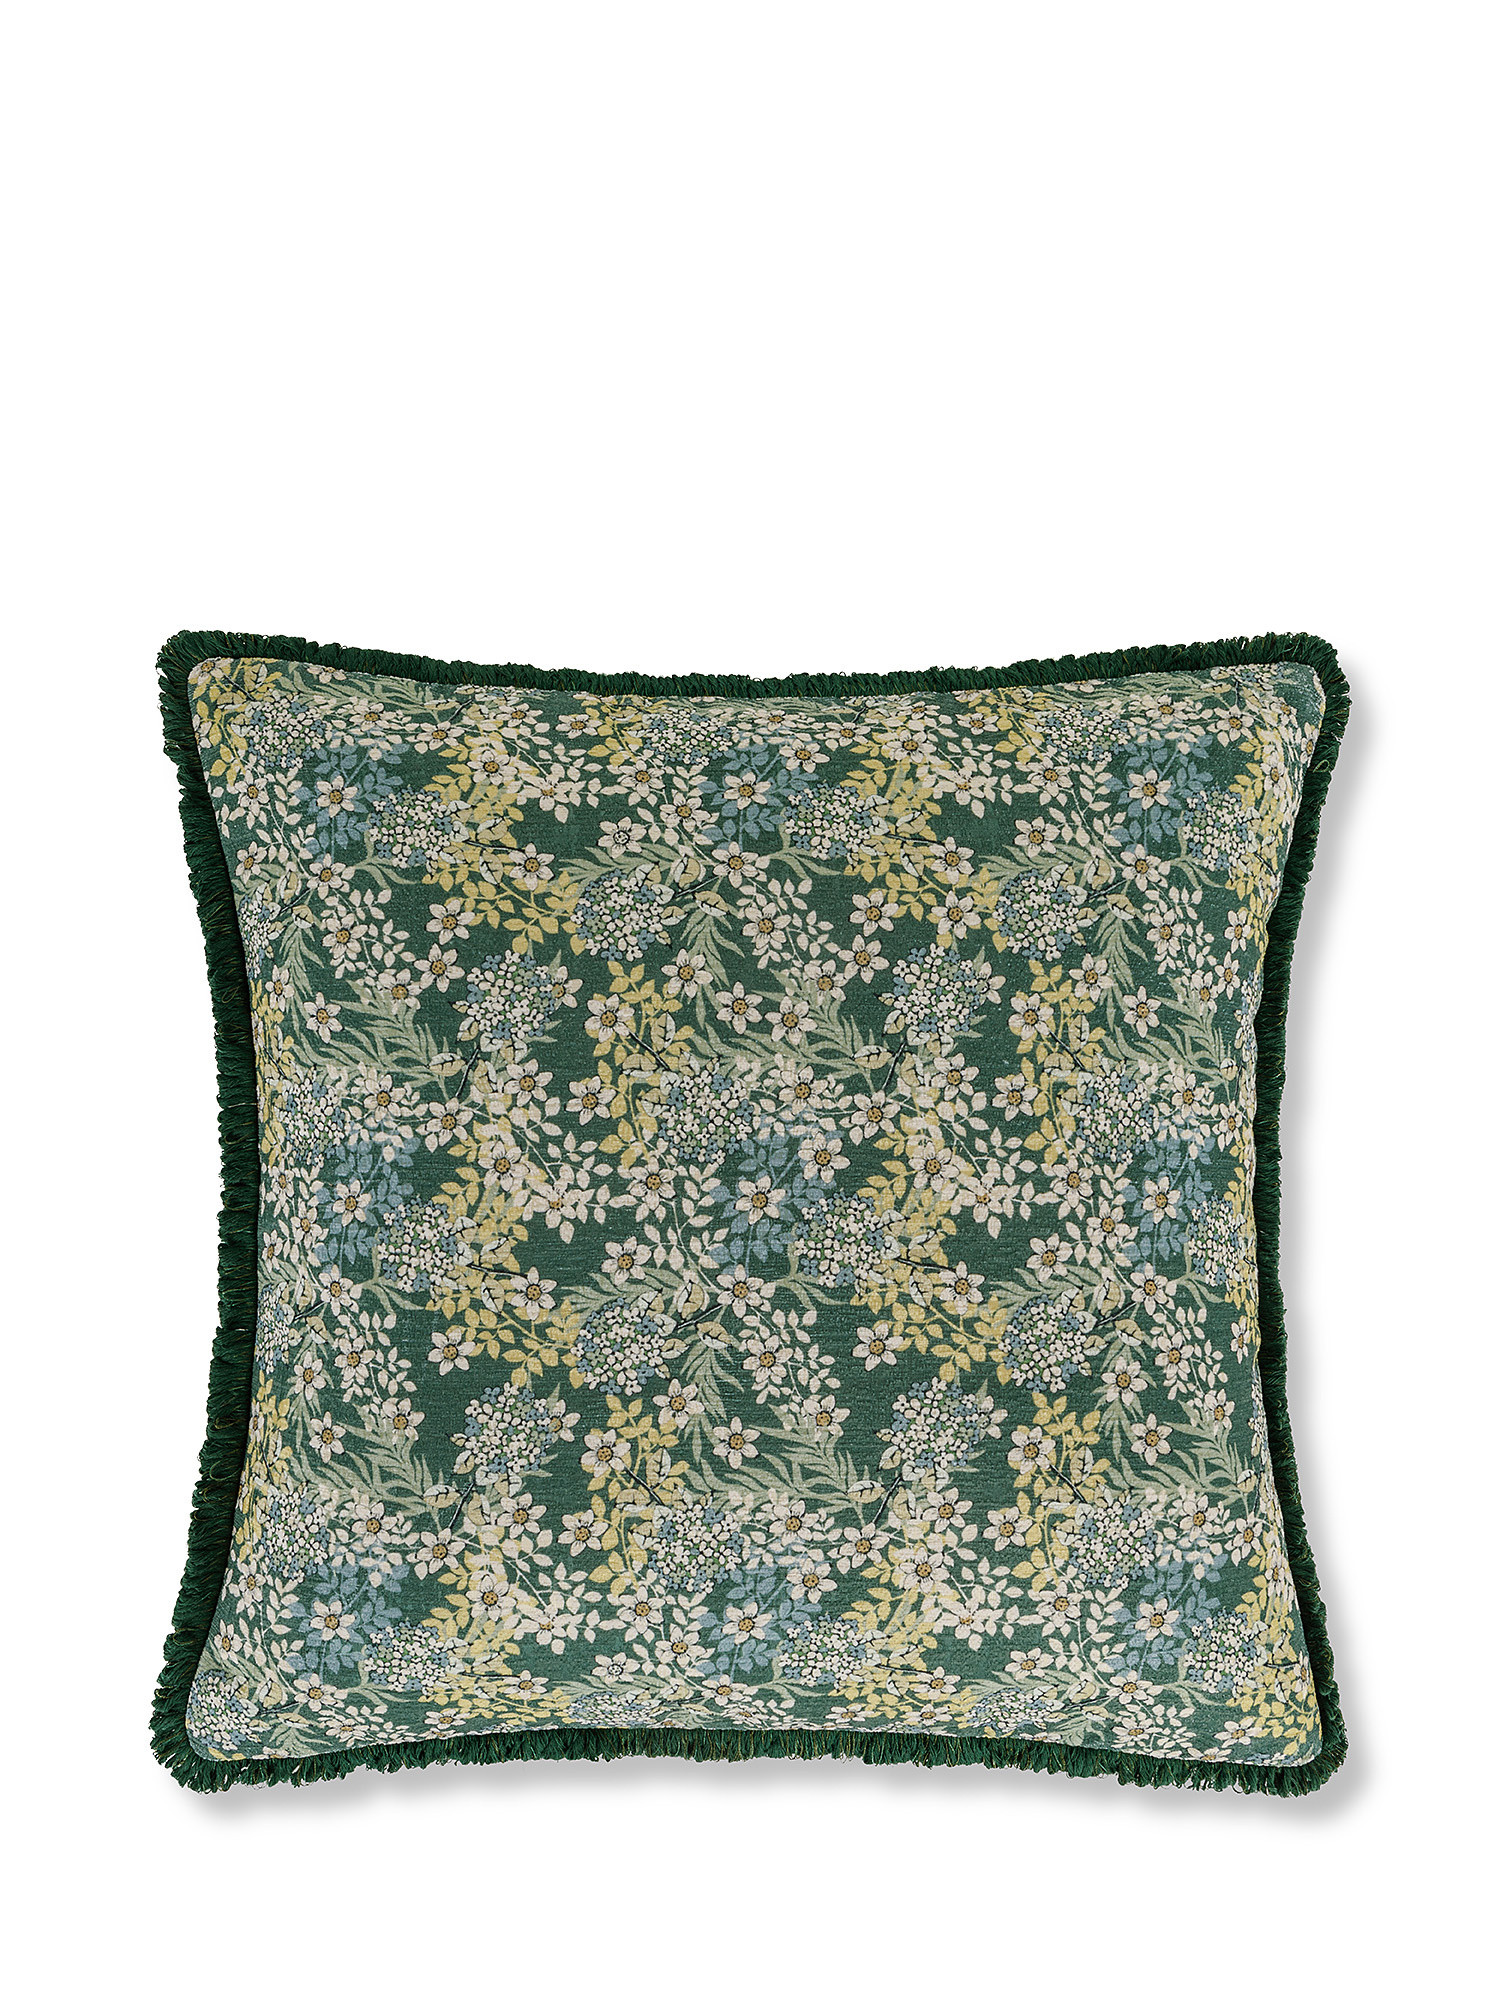 Cuscino stampa fiorellini 45x45cm, Verde, large image number 0